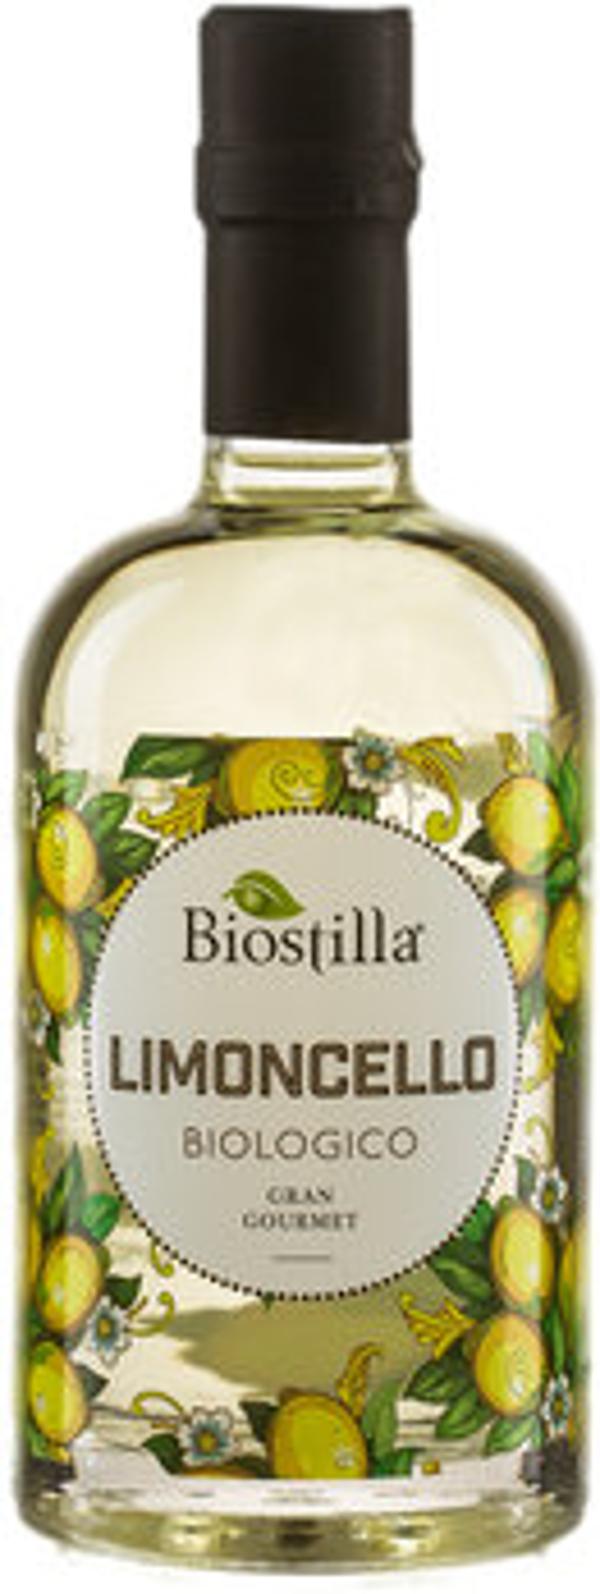 Produktfoto zu Limoncello Biostilla